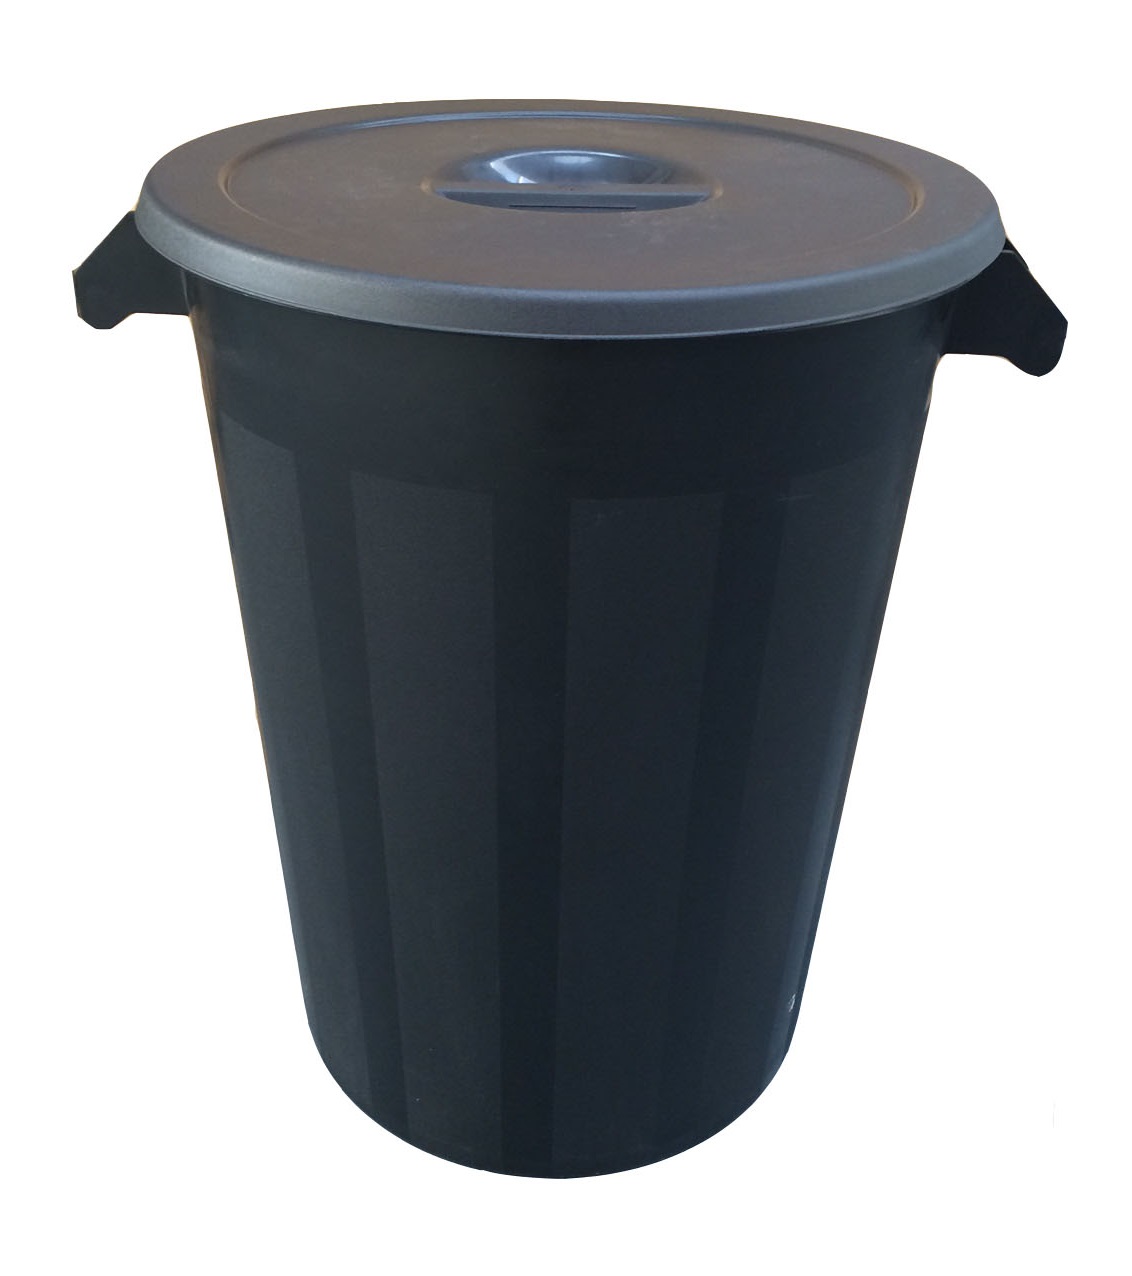 100 Litre Black Plastic Industrial Waste Recycling Bin w/Lid